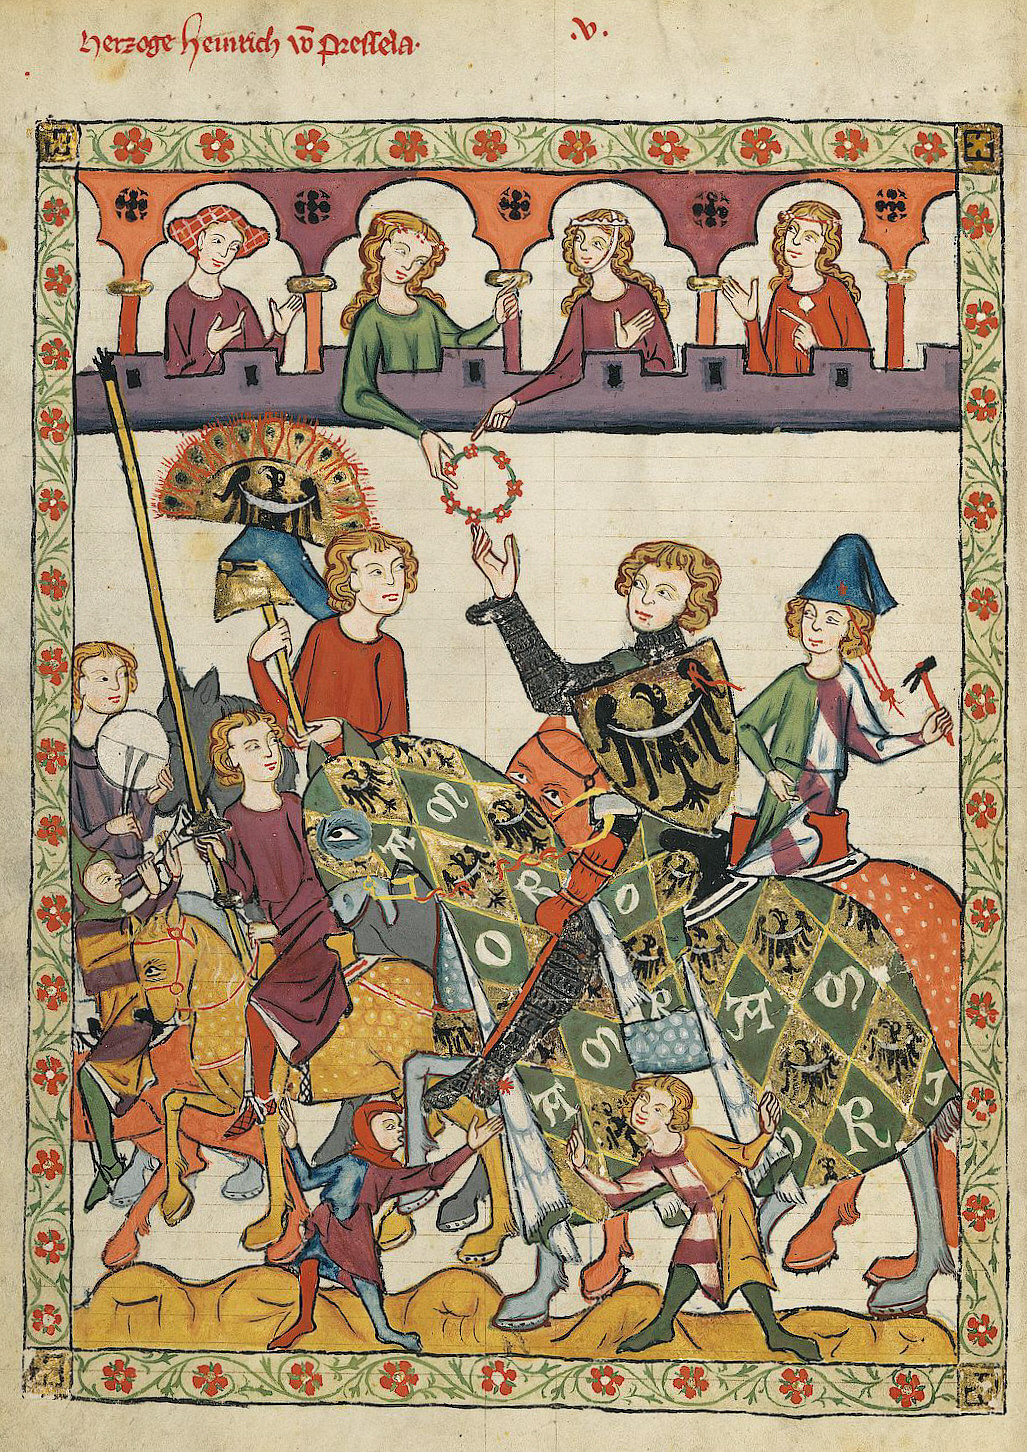 A Armadura de um Cavaleiro Medieval Inglês - Enciclopédia da História  Mundial